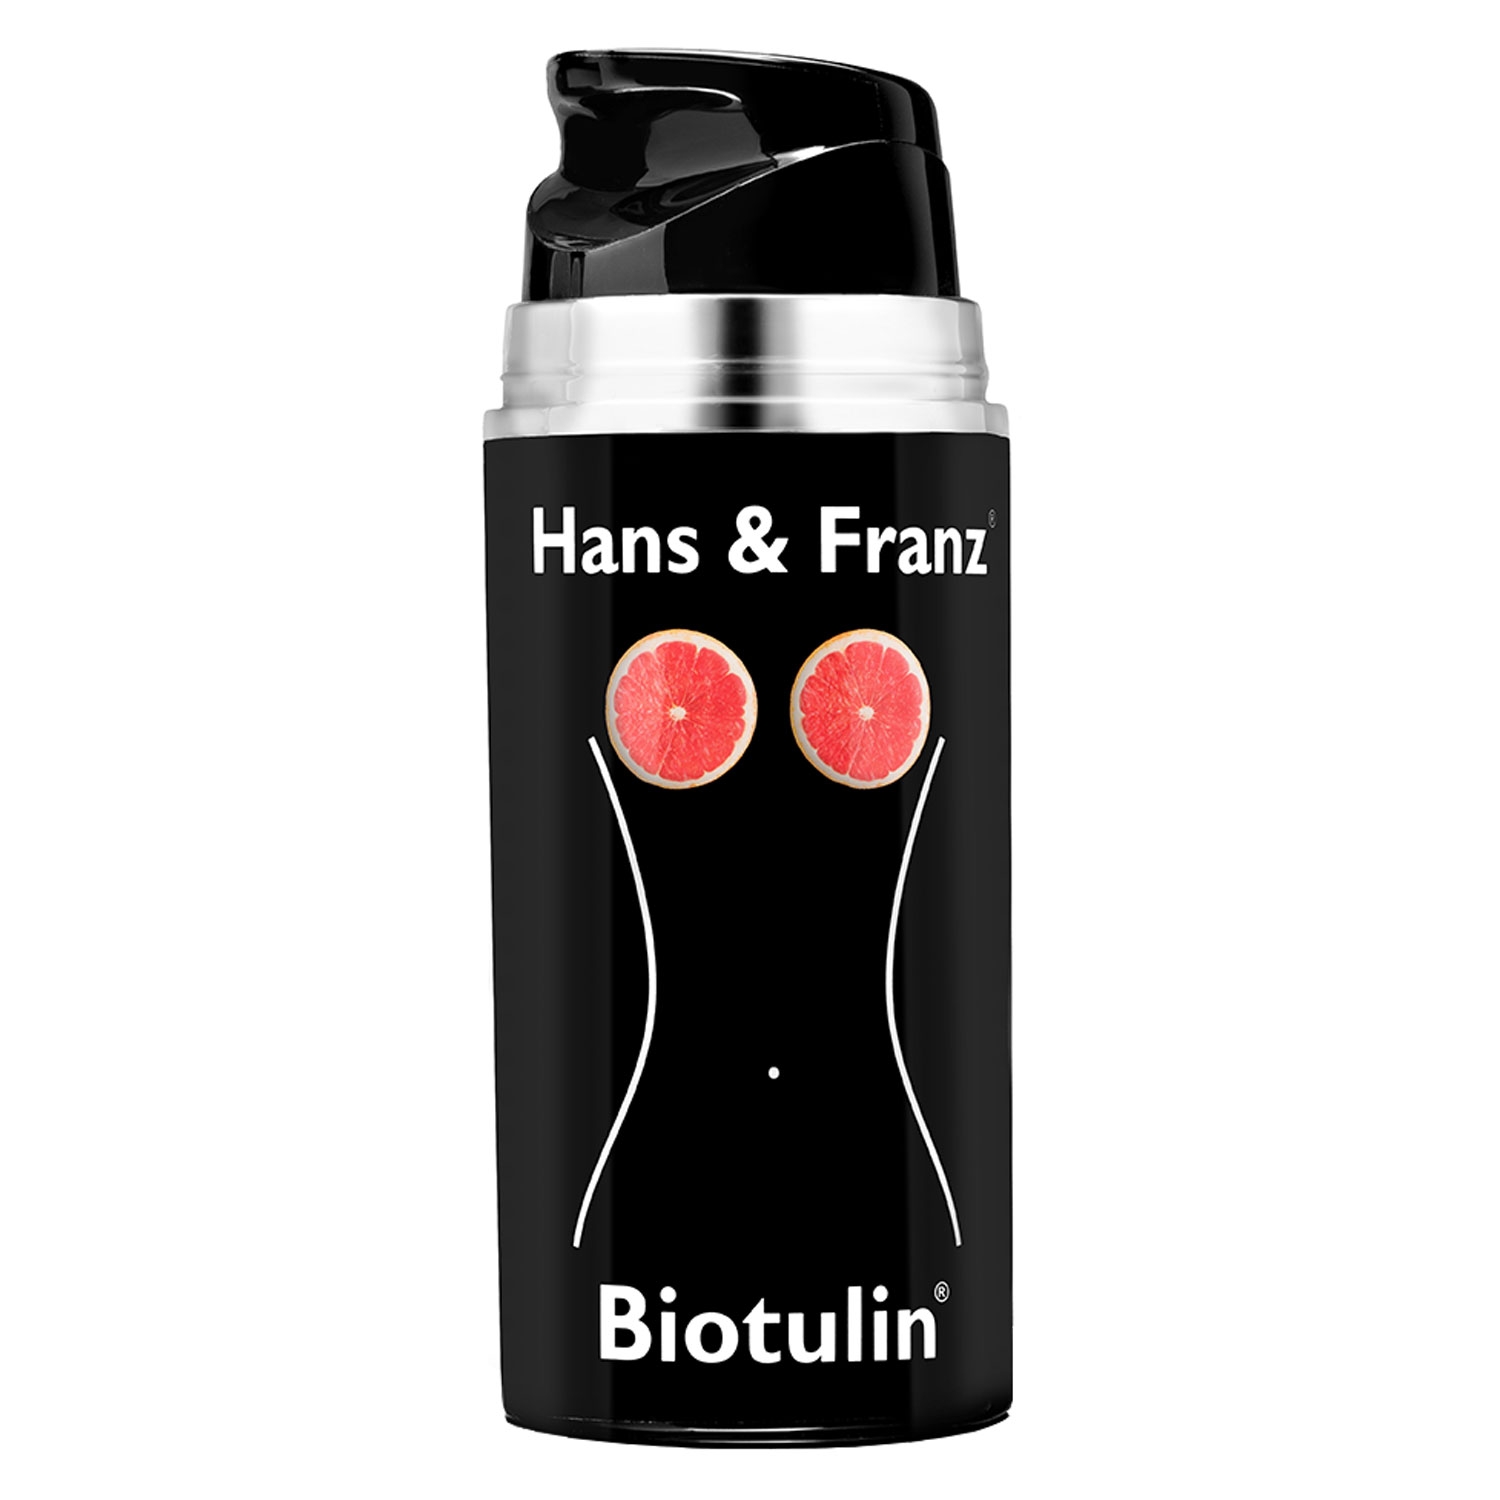 Produktbild von Biotulin - Hans & Franz